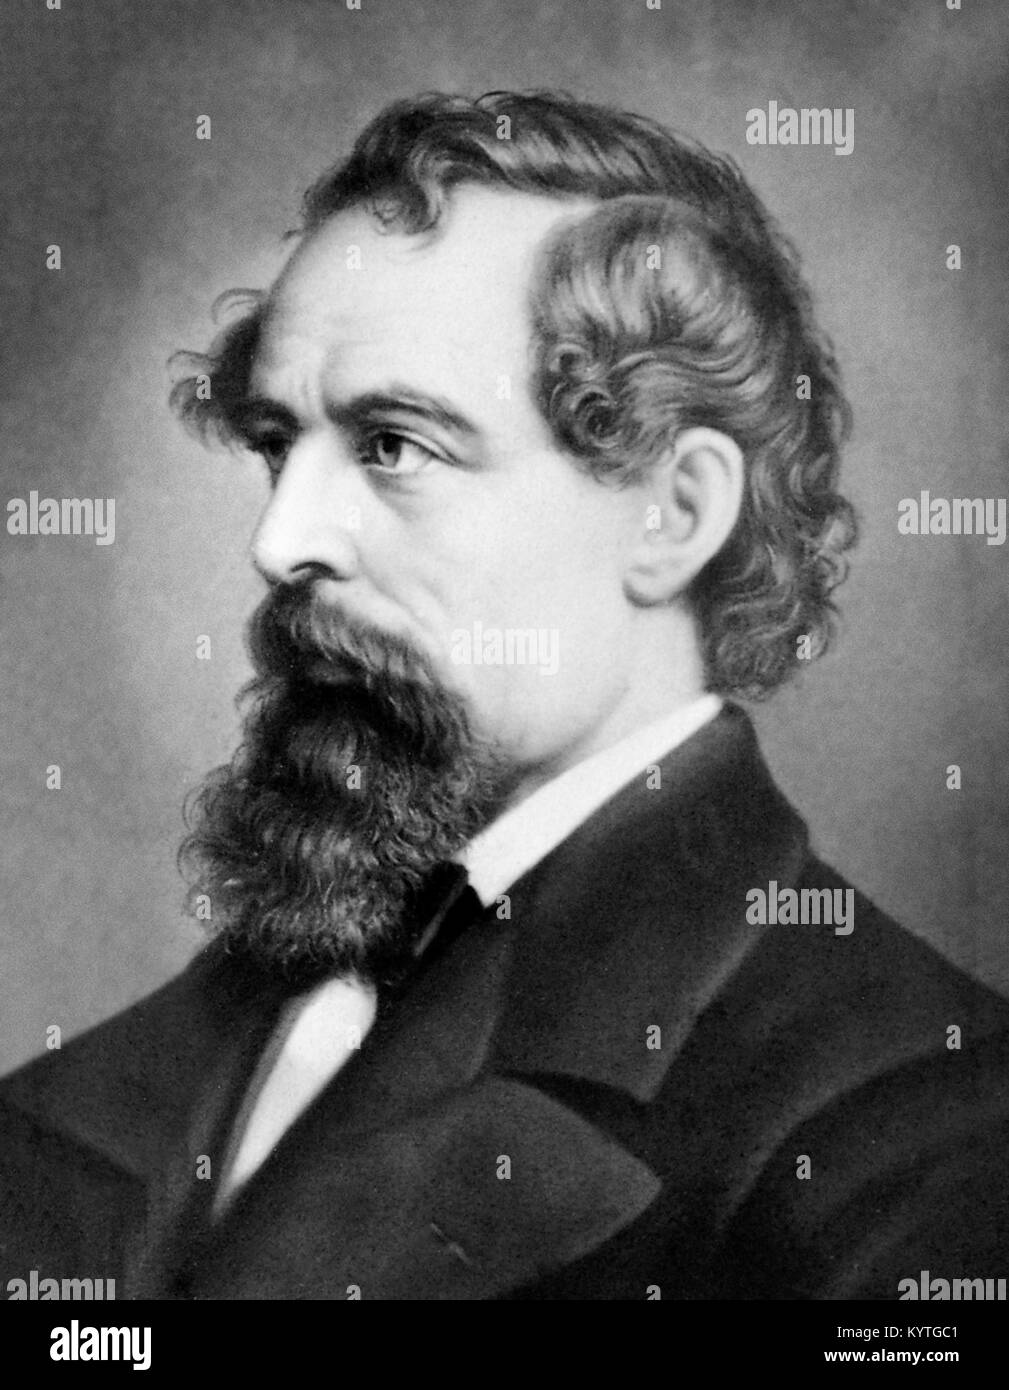 Ritratto del XIX secolo scrittore inglese Charles Dickens (1812-1870) Foto Stock